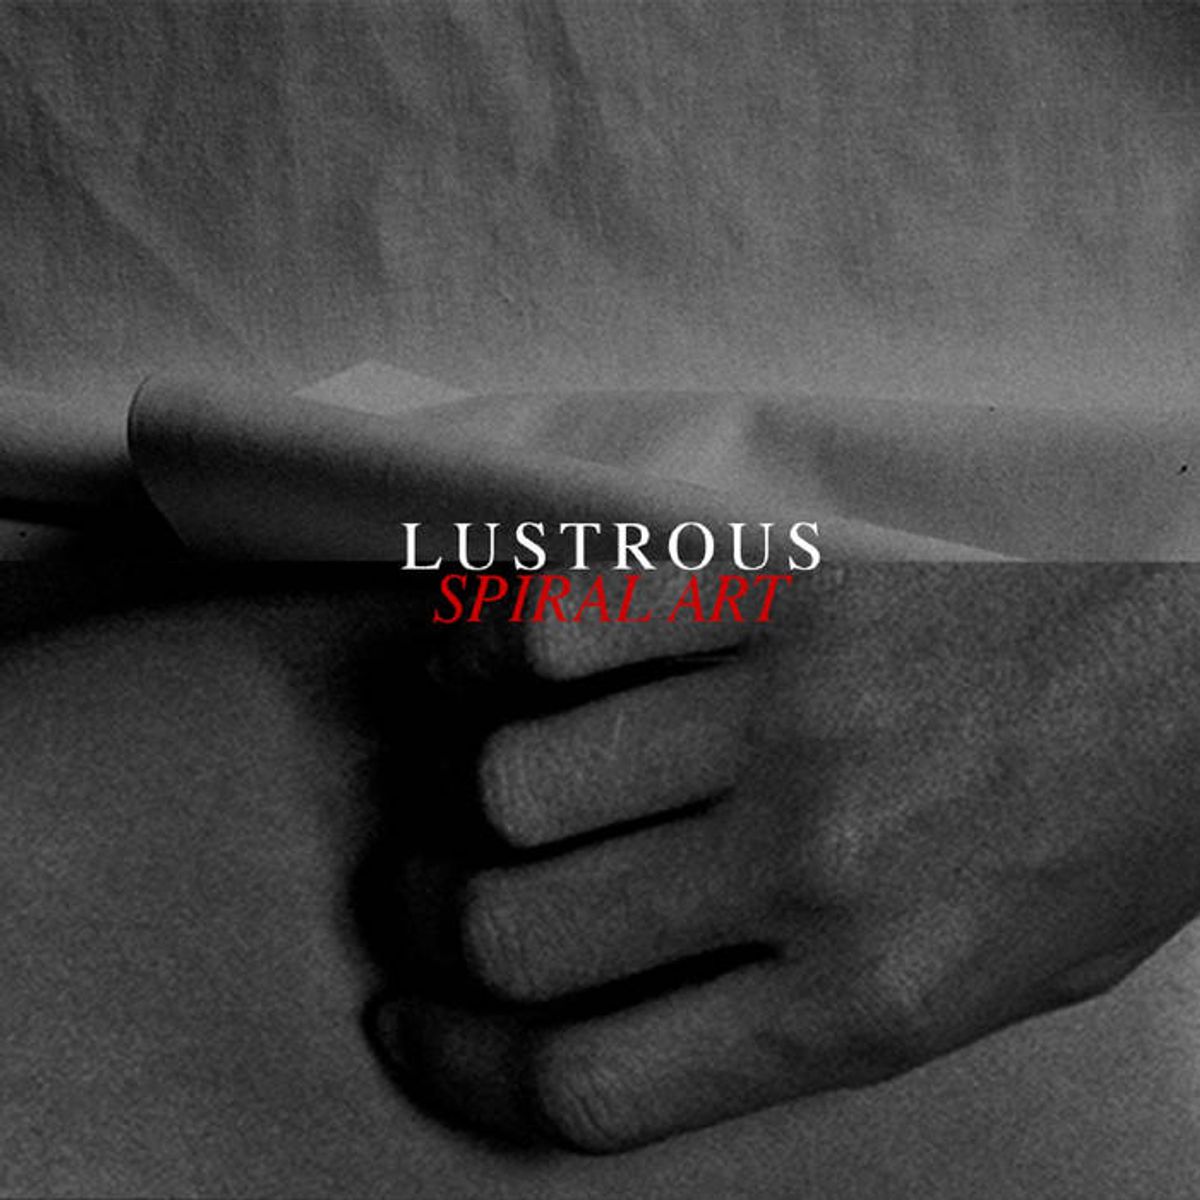 vi.be januari: Lustrous